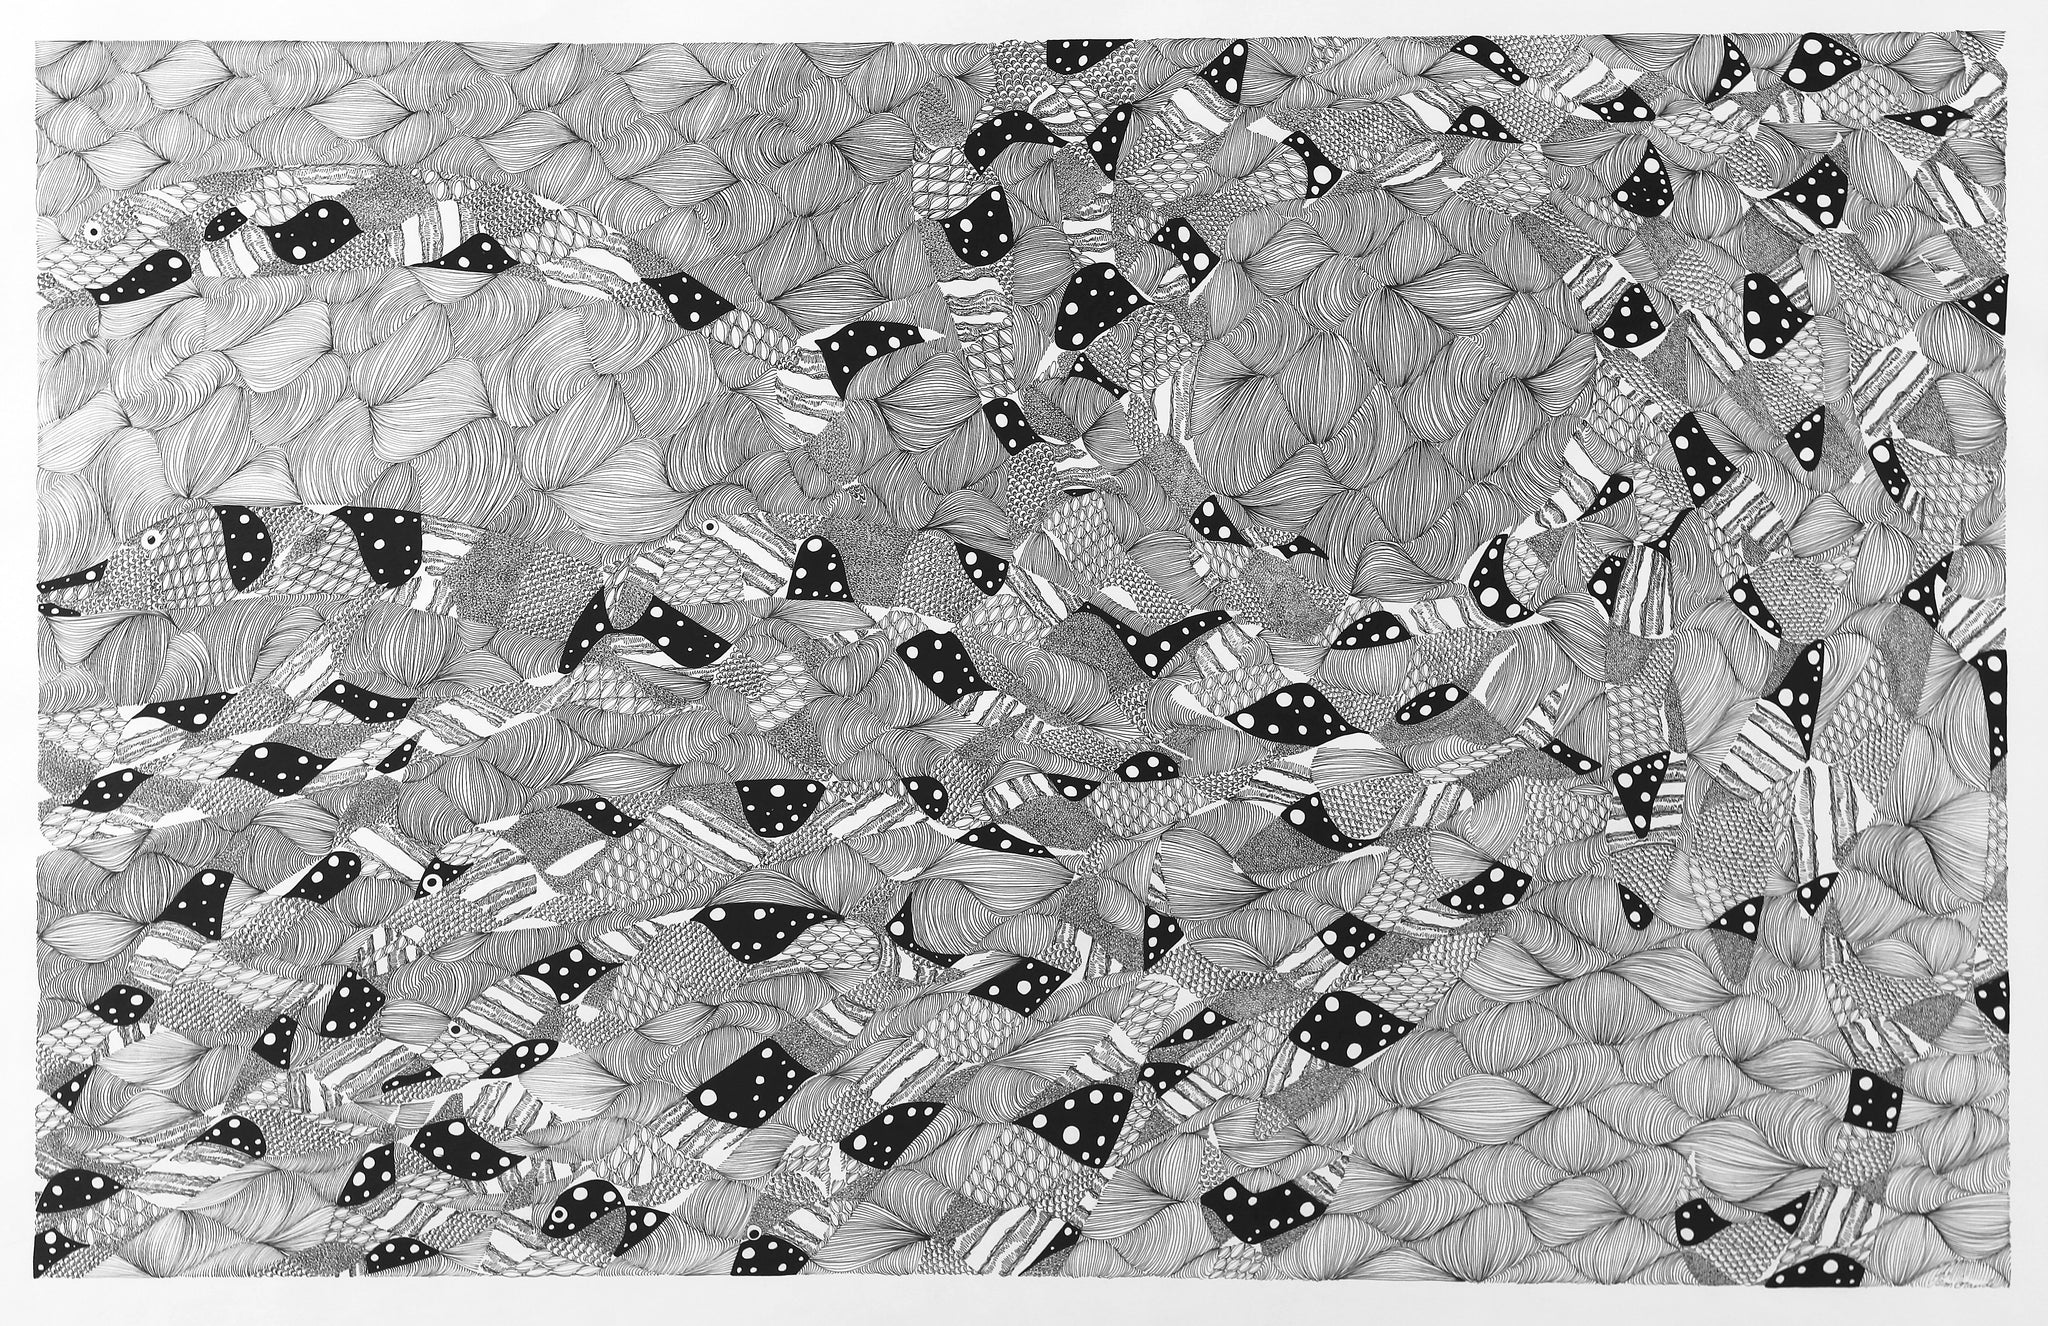 Oeuvre Graphique en noir et blanc, "Banc de poisson", 59,5 x 94 cm, encre de chine sur papier, Oeuvre Originale, Art Nouveau Post Exotique, Art à la thématique animalière, Art marin, Art & ocean, poisson, banc de poisson, thématique aquatique